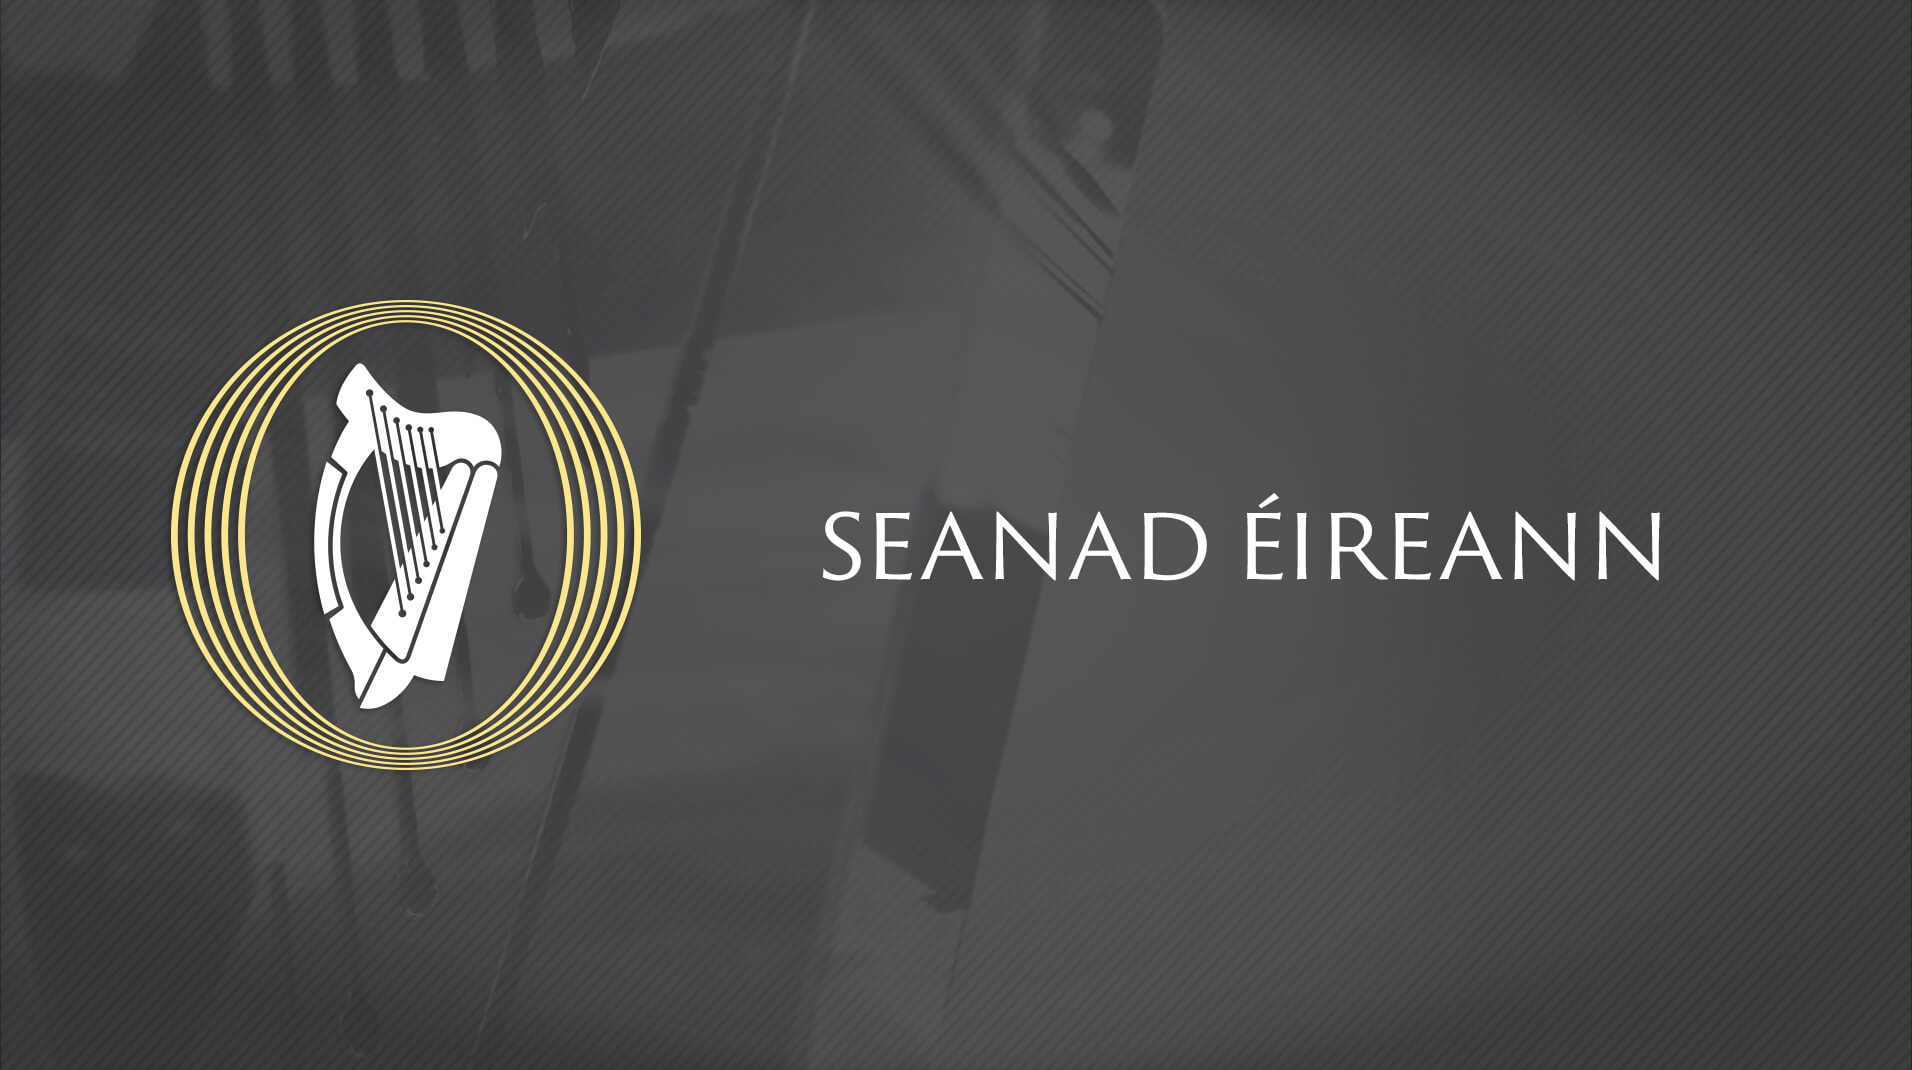 Oireachtas TV Seanad Eireann